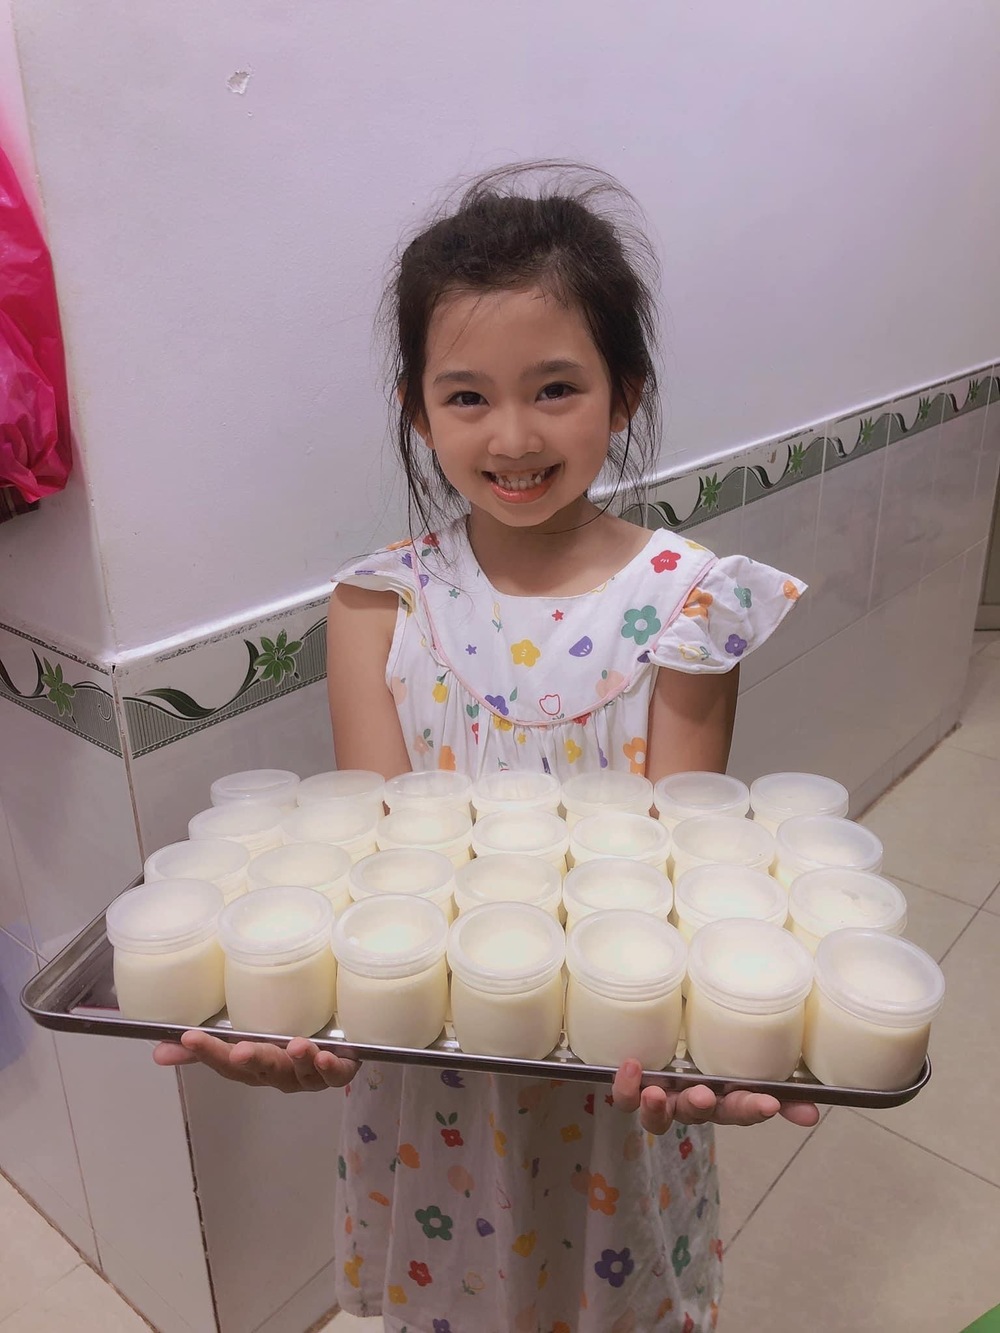 Ở tuổi lên 9, con gái cố diễn viên Mai Phương ngày càng tự lập, biết nấu ăn, bộc lộ nhiều năng khiếu - Ảnh 2